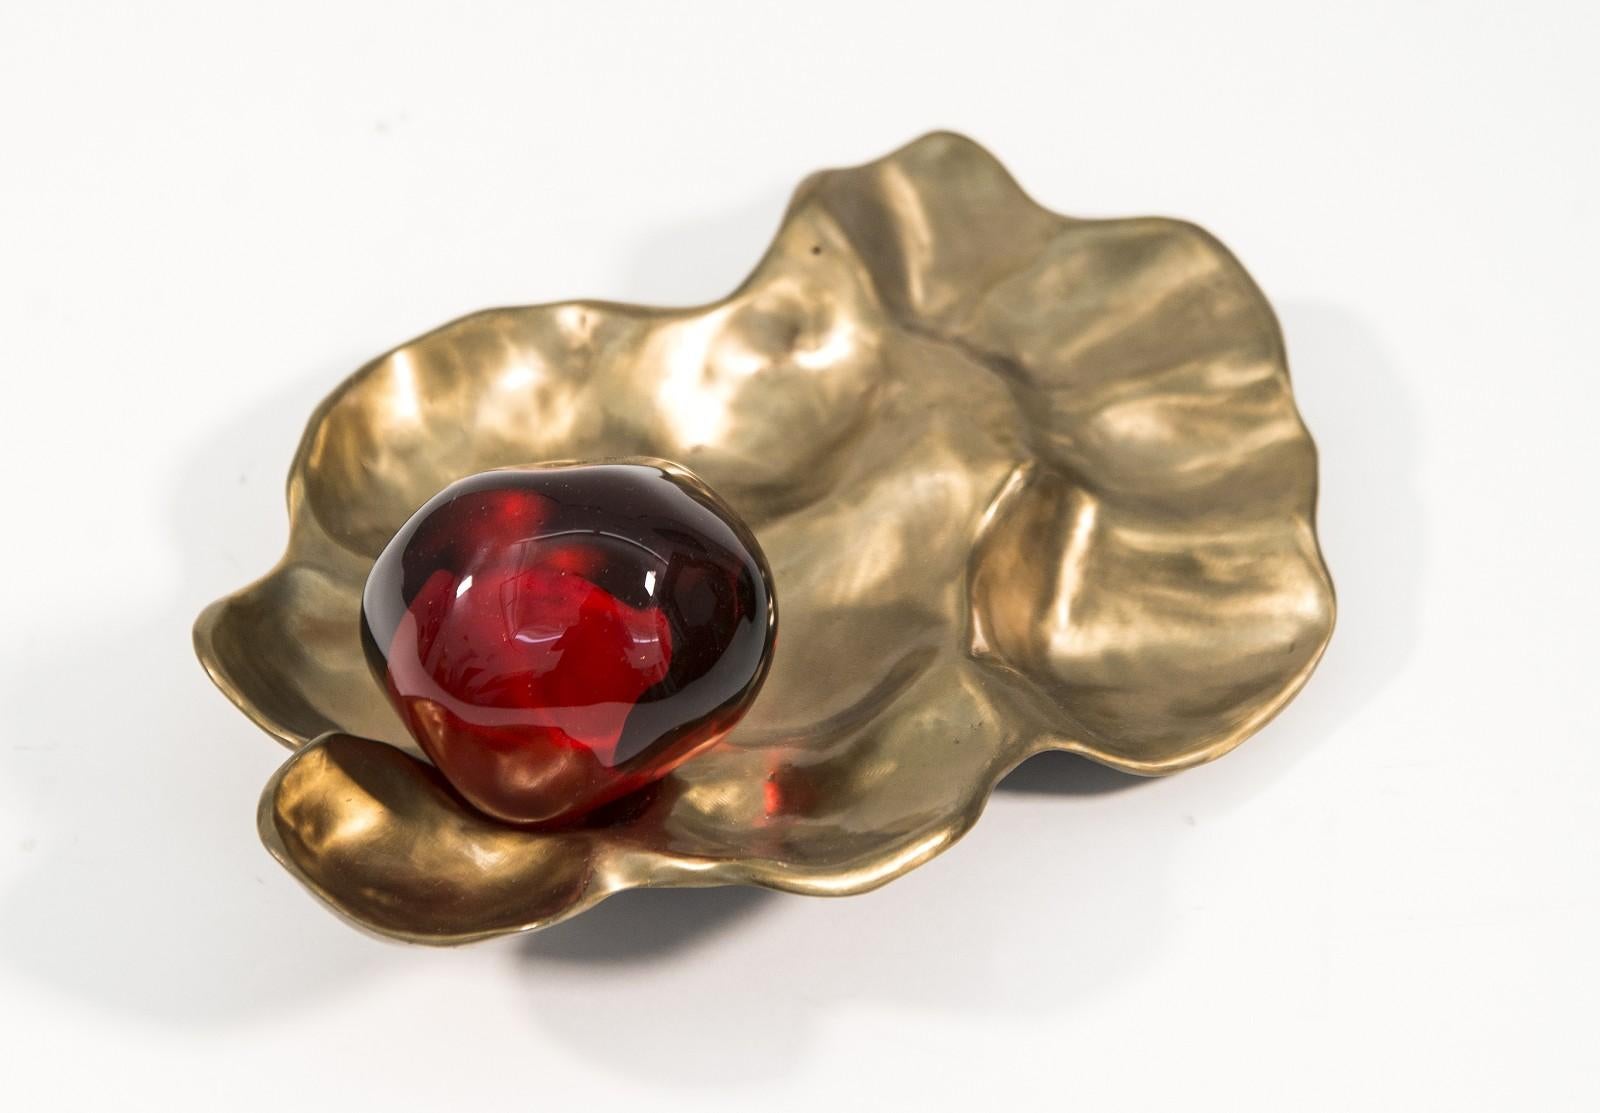 Le verre rouge grenade est niché dans un boîtier en bronze. Vamvakas Lay utilise le bronze et le verre pour créer l'illusion de graines de grenade éparpillées.

Vamvakas Lay incorpore souvent l'imagerie de la grenade combinée au bronze, pour